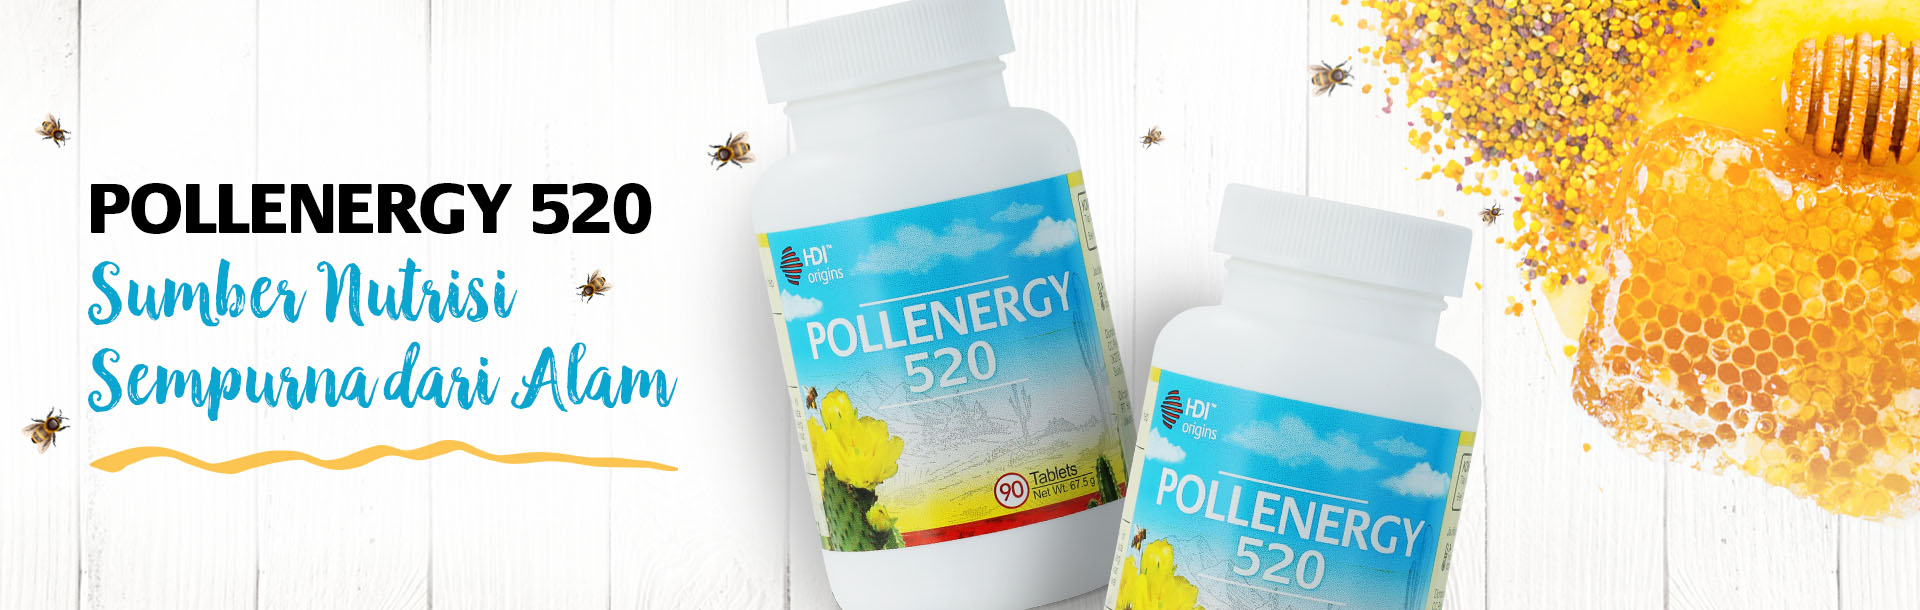 pollenergy 520